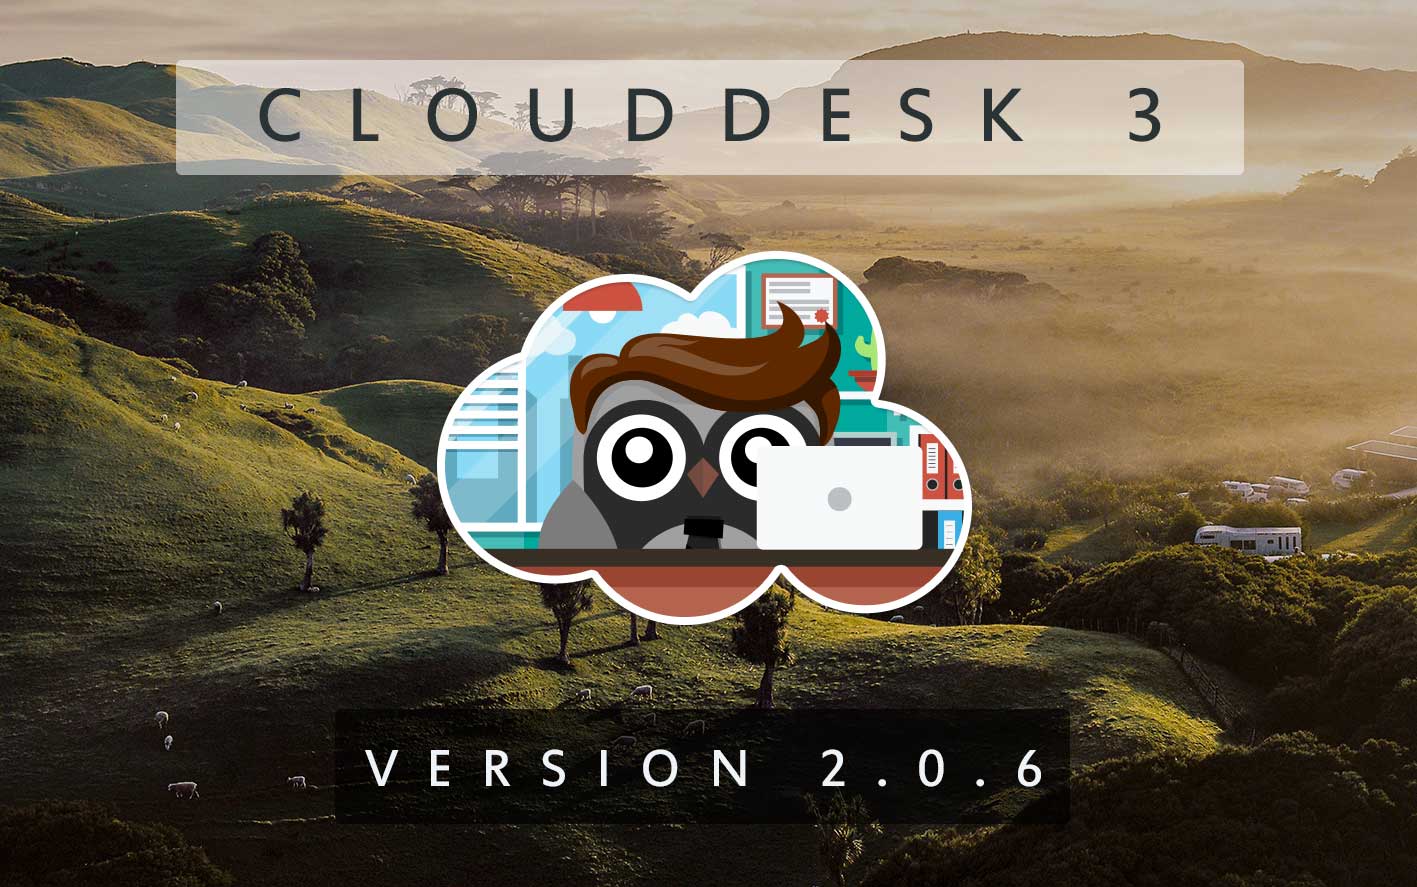 Cloud Desk 3 - Version 2.0.6